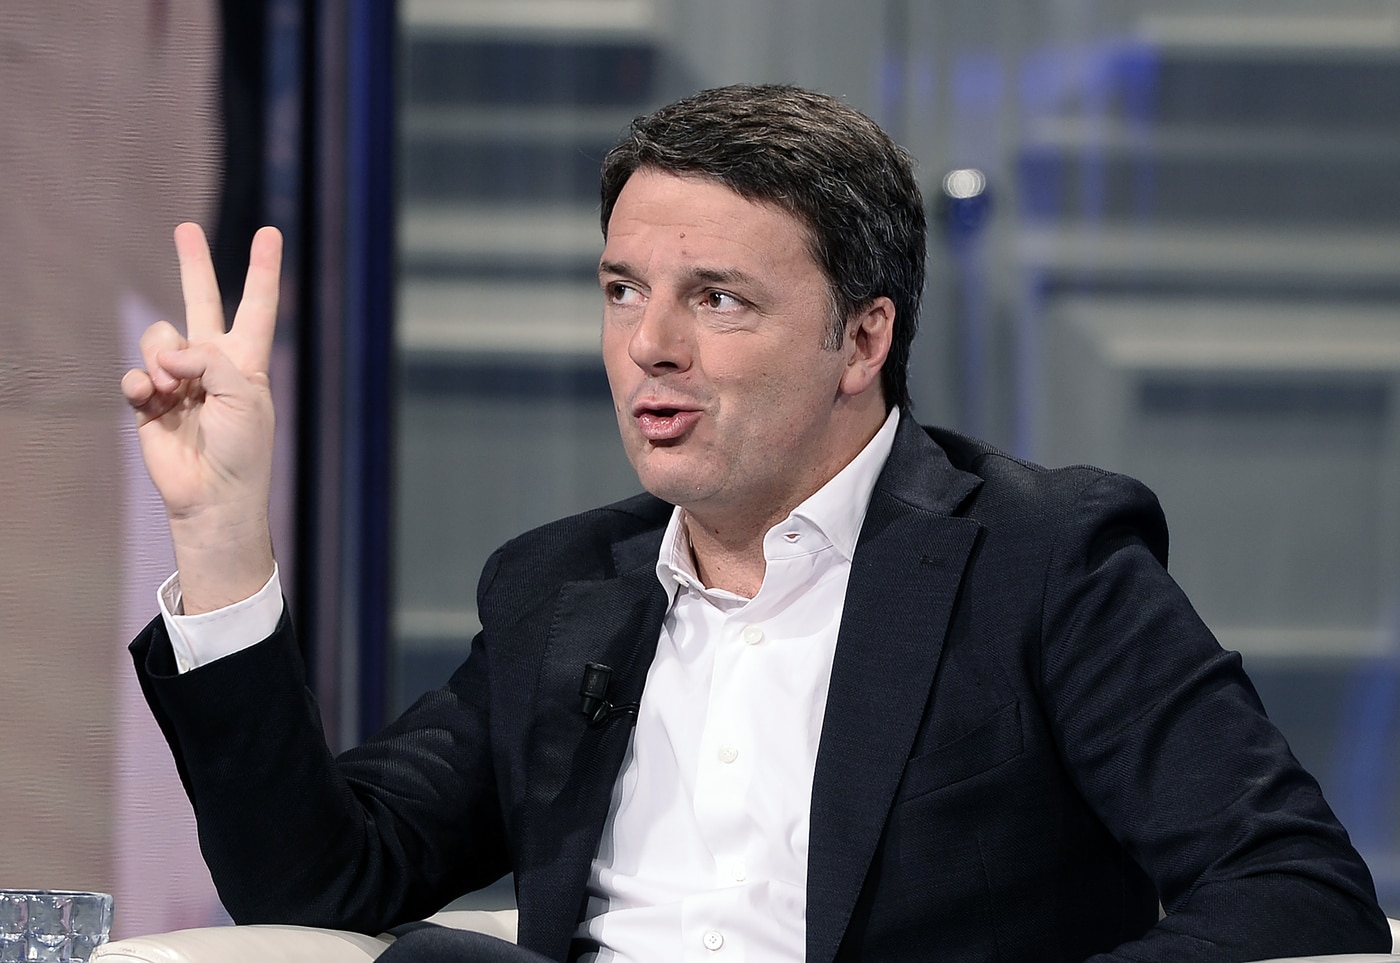 Ennesima giravolta di Renzi <br> Italia Viva vota sì al processo a Salvini <br> Il leader della Lega commenta: “Venditore di tappetti” <br> Grazie alla sua incoerenza il fiorentino corre verso l’0% dei consensi